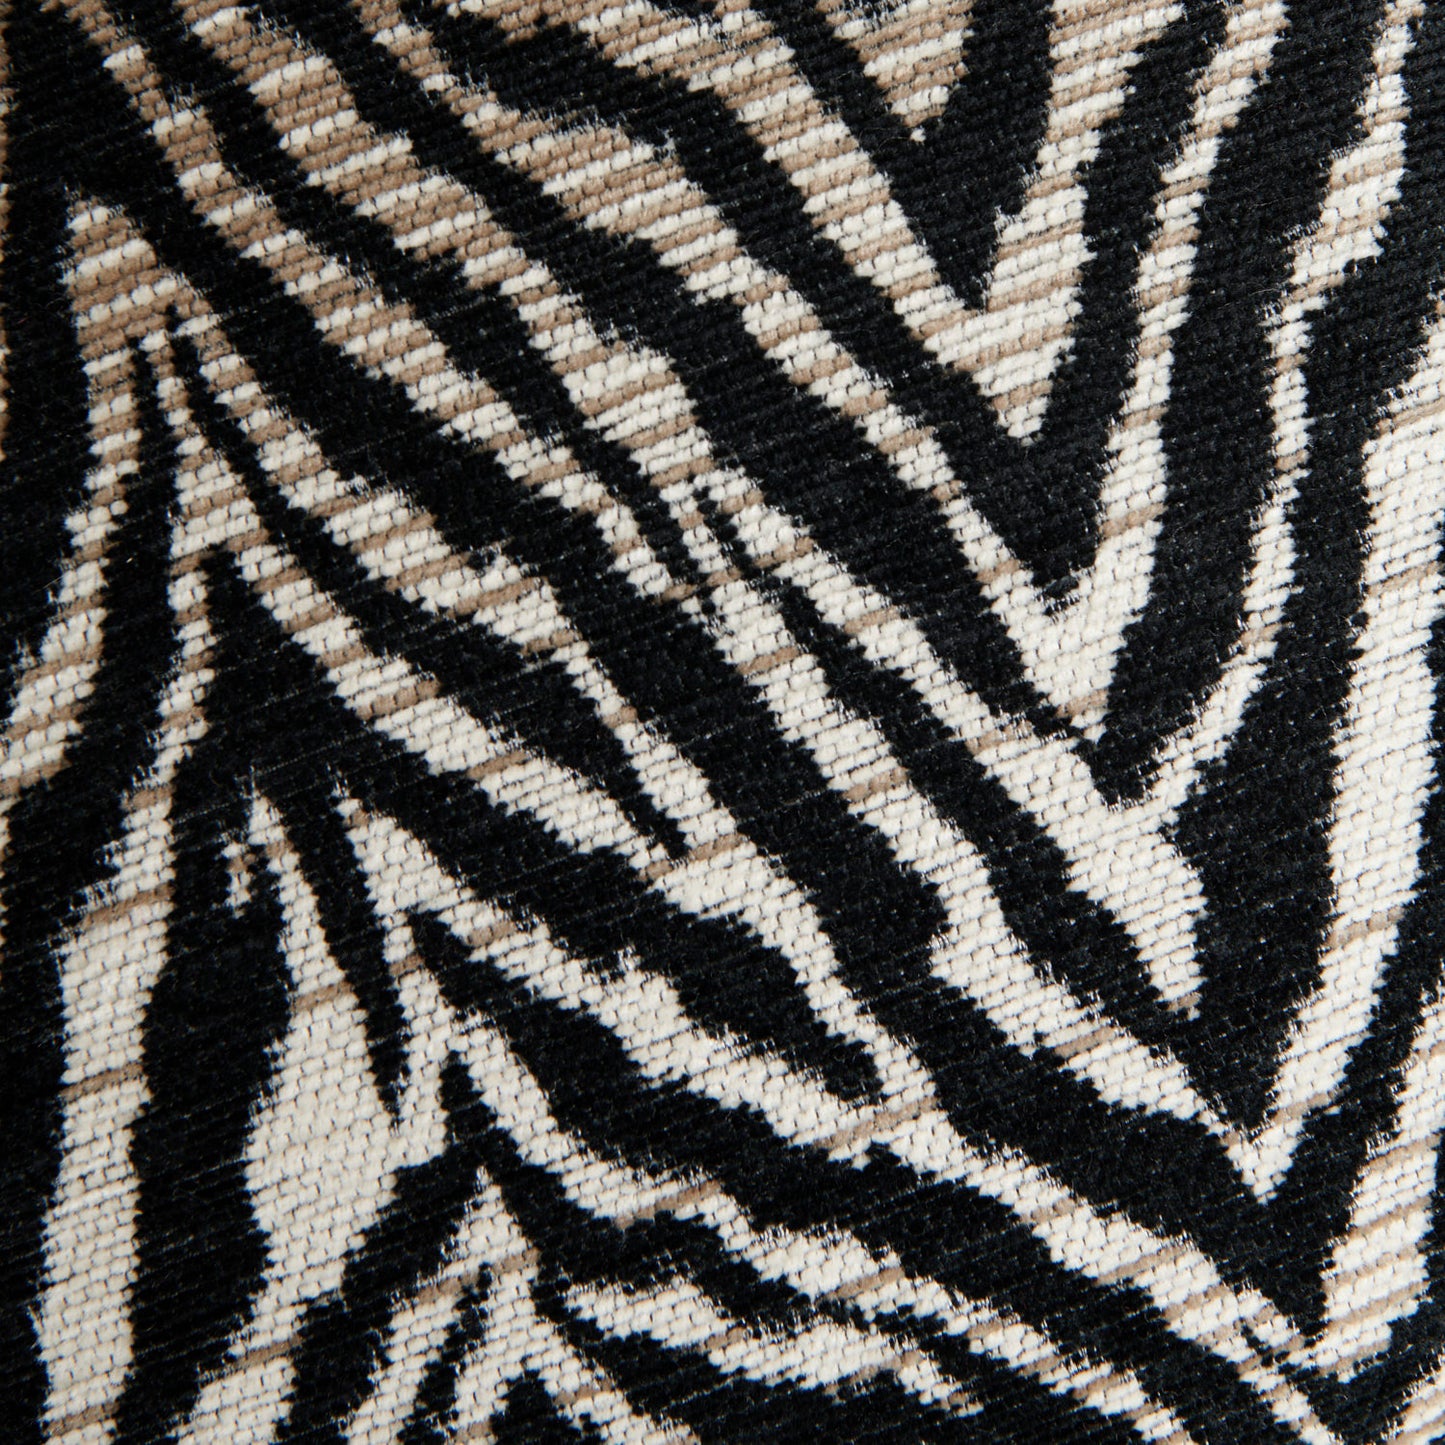 Zebra Stripe